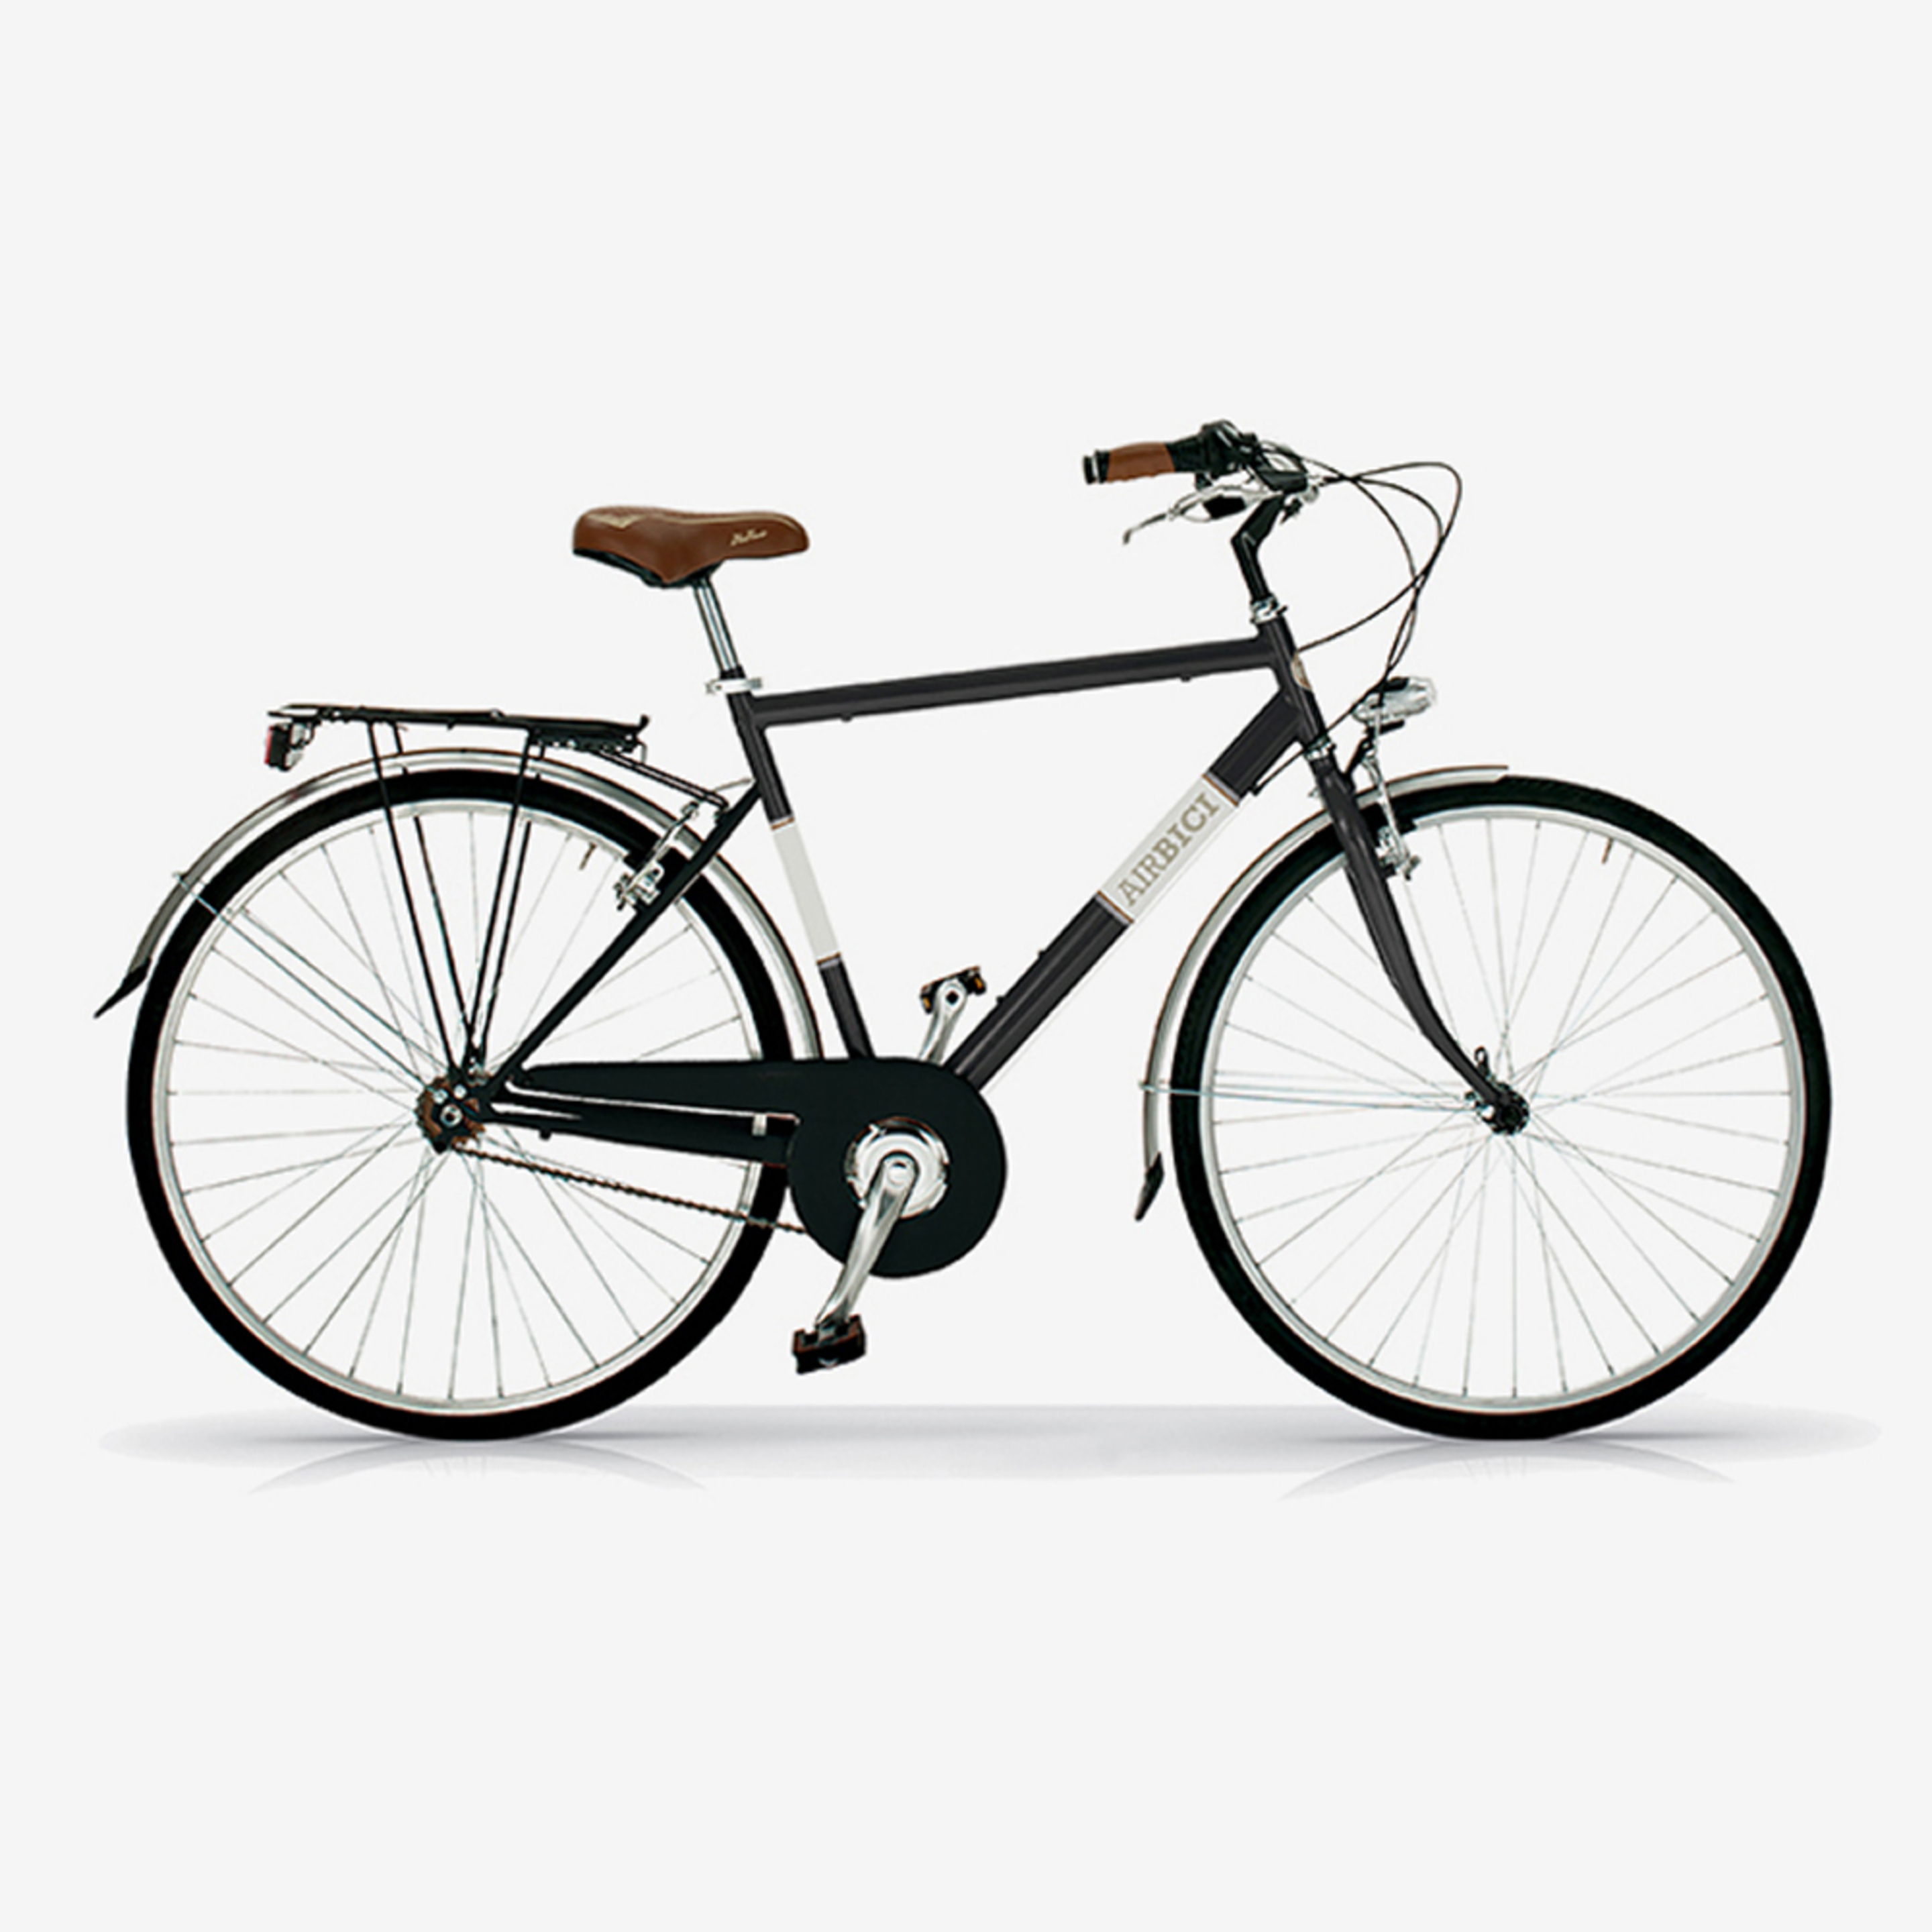 Bicicleta De Ciudad Airbici 605m Allure - Negro - Vintage, paseo, ciudad  MKP